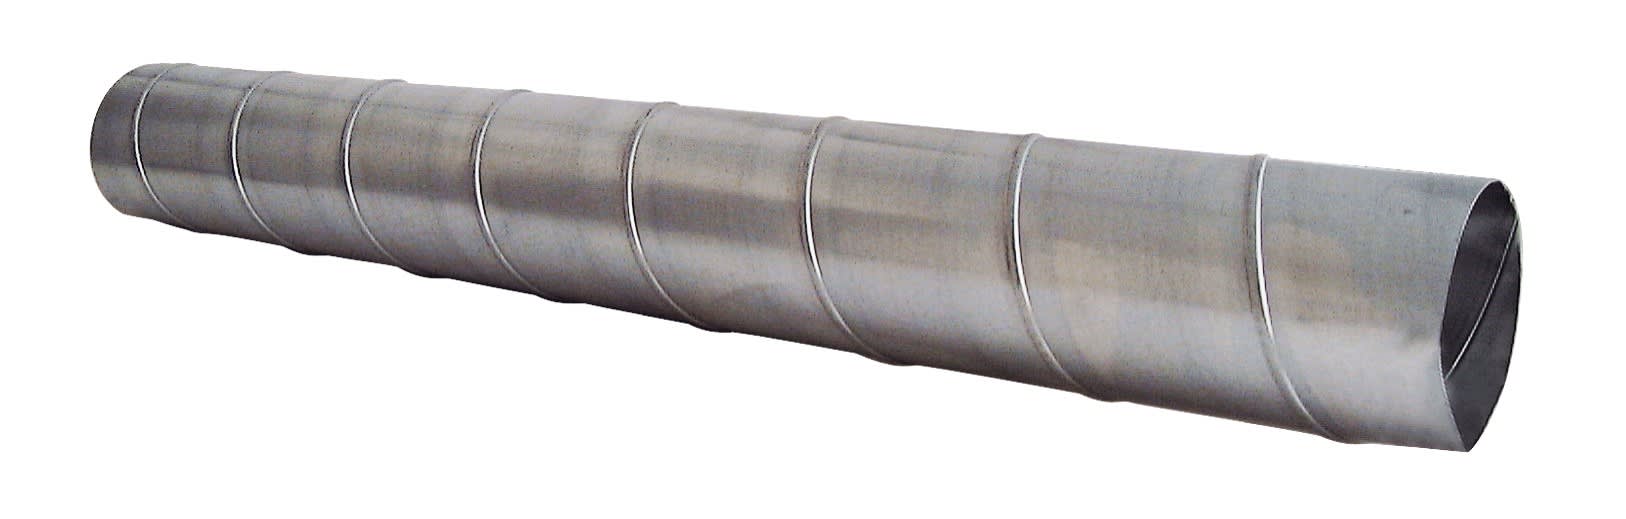 S&P - Conduit spiralé aluminium, D 315 mm, longueur 1 m